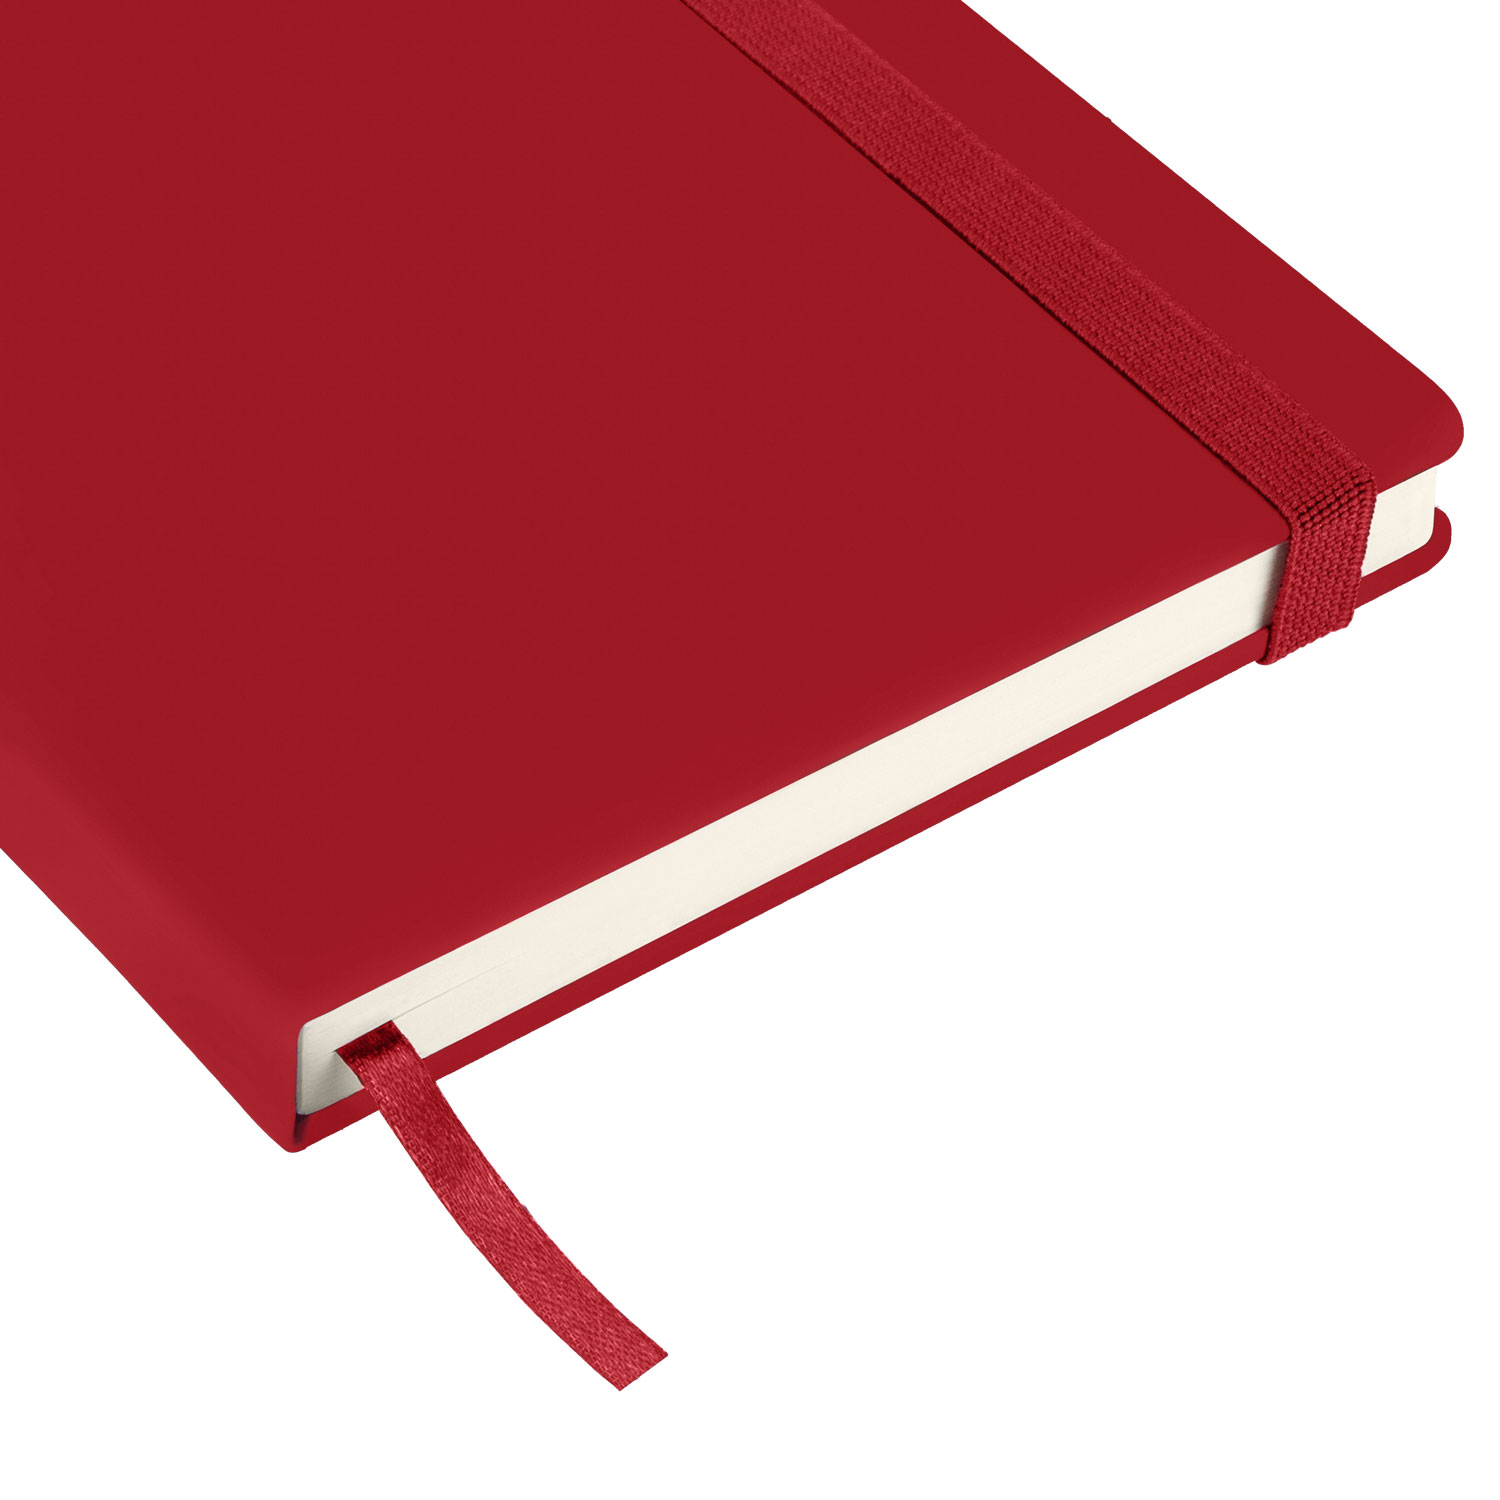 Ежедневник Alpha BtoBook недатированный, красный (без упаковки, без стикера)